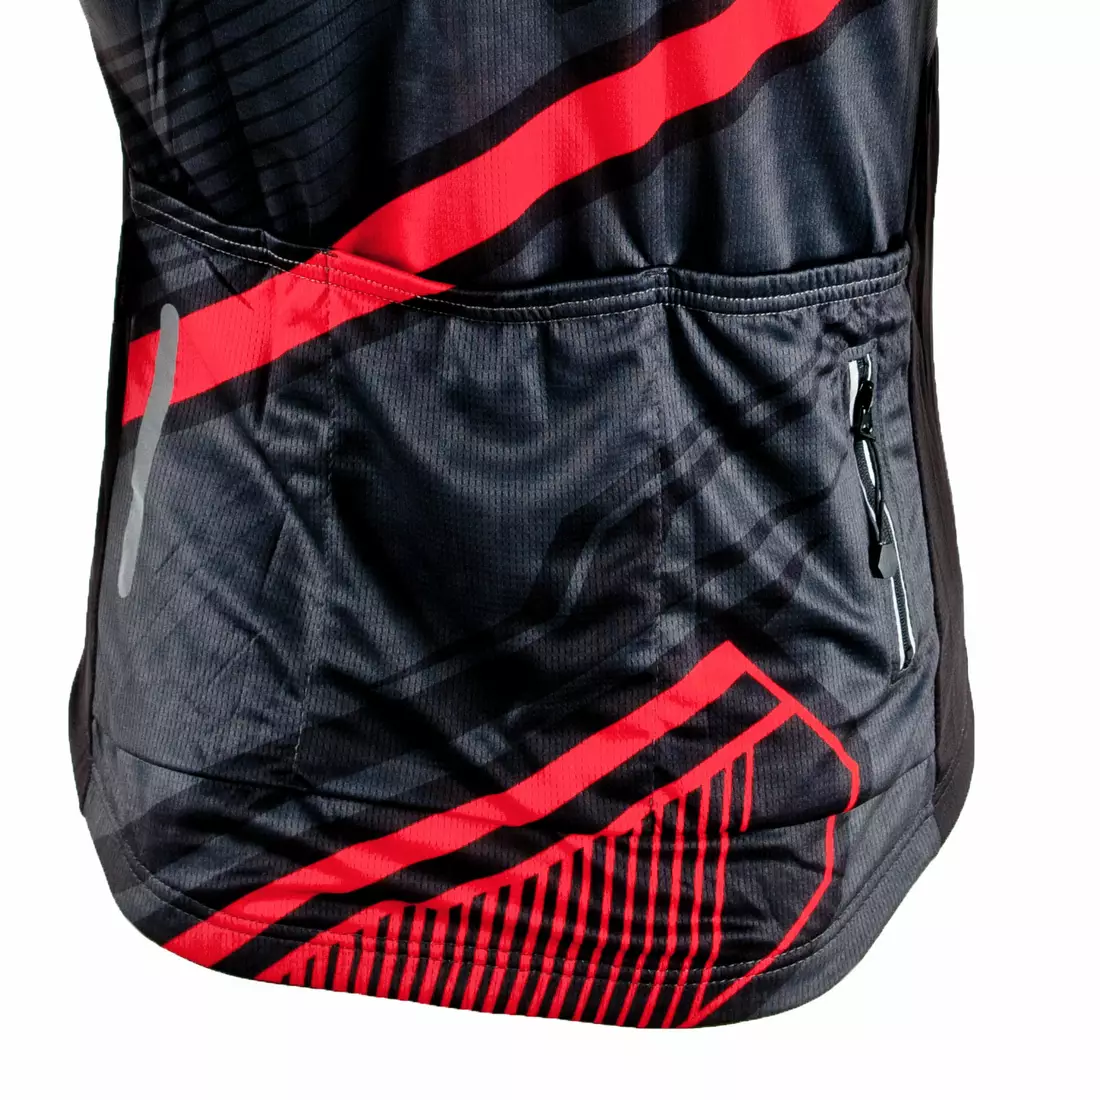 DEKO pánska cyklistická košeľa s krátkym rukávom, červená MNK-001-09